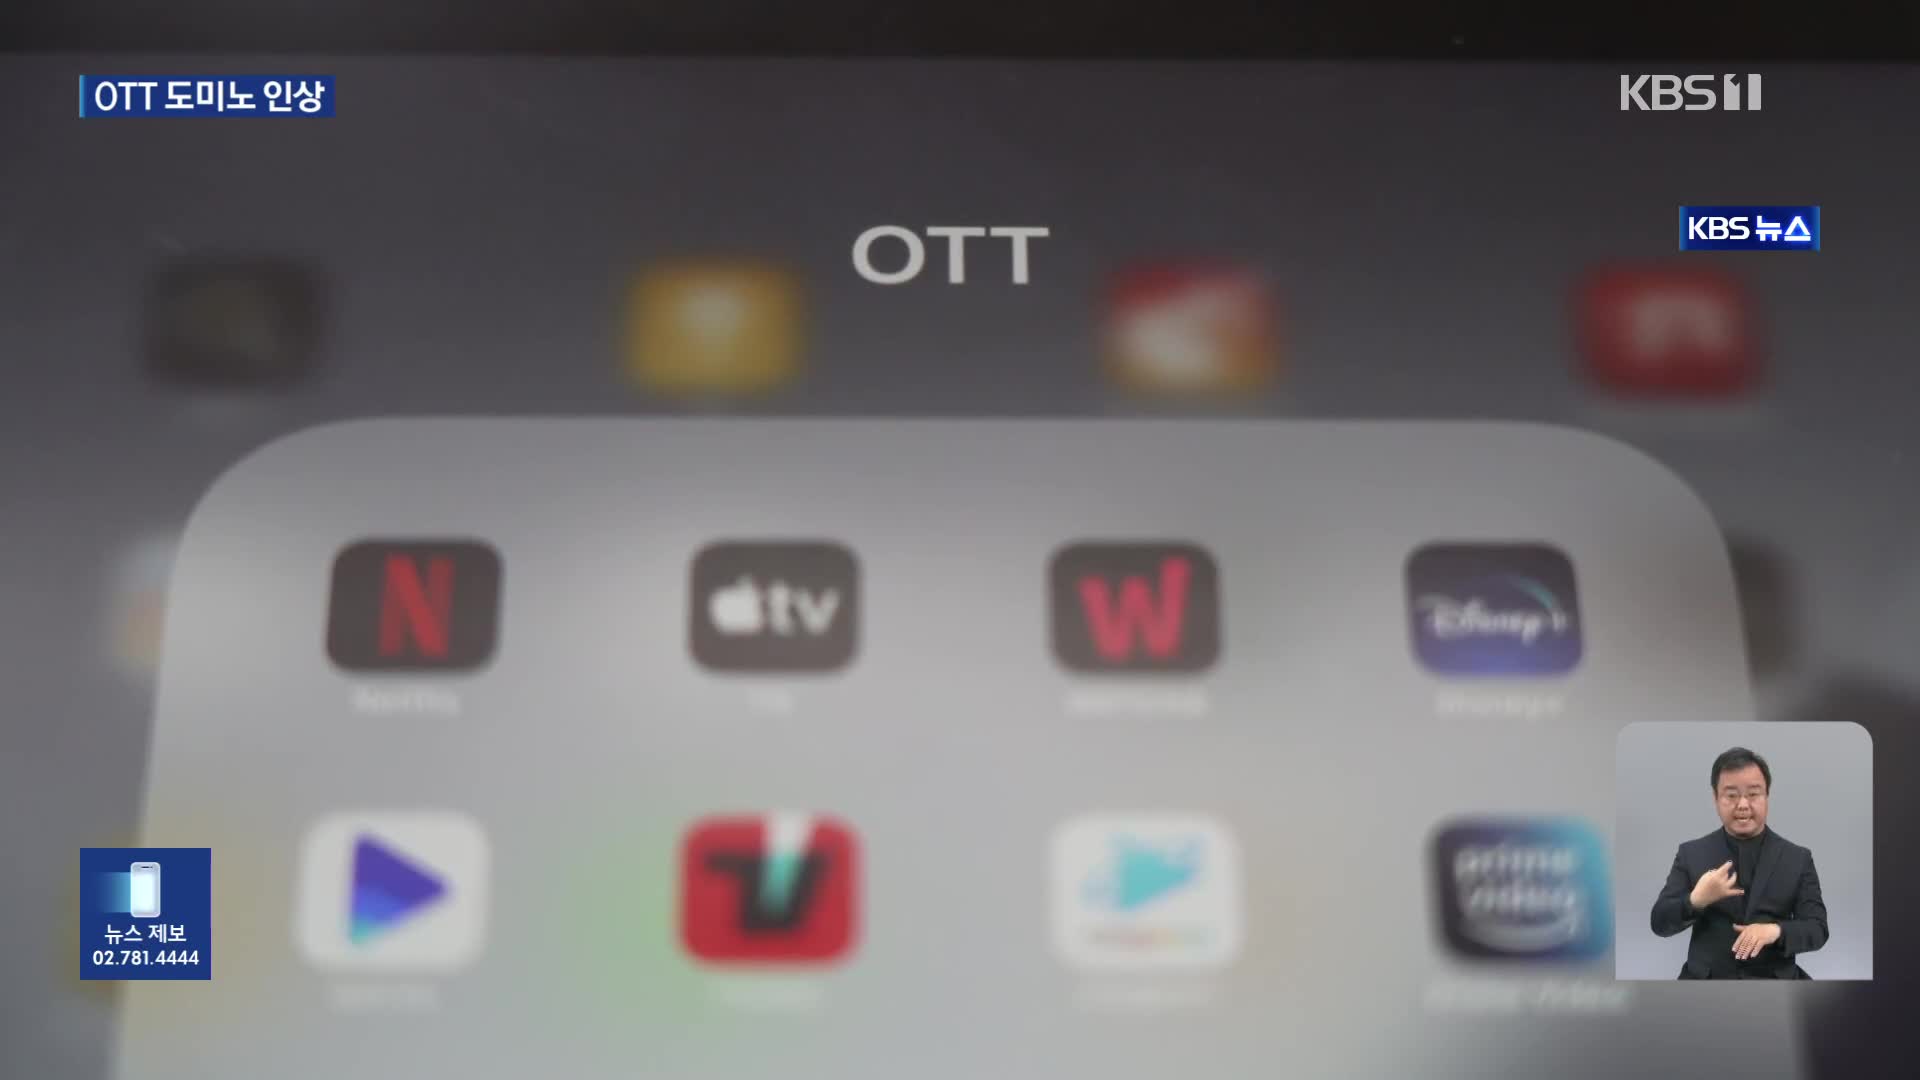 OTT 도미노 인상…현실화된 넷플릭스발 ‘스트림플레이션’